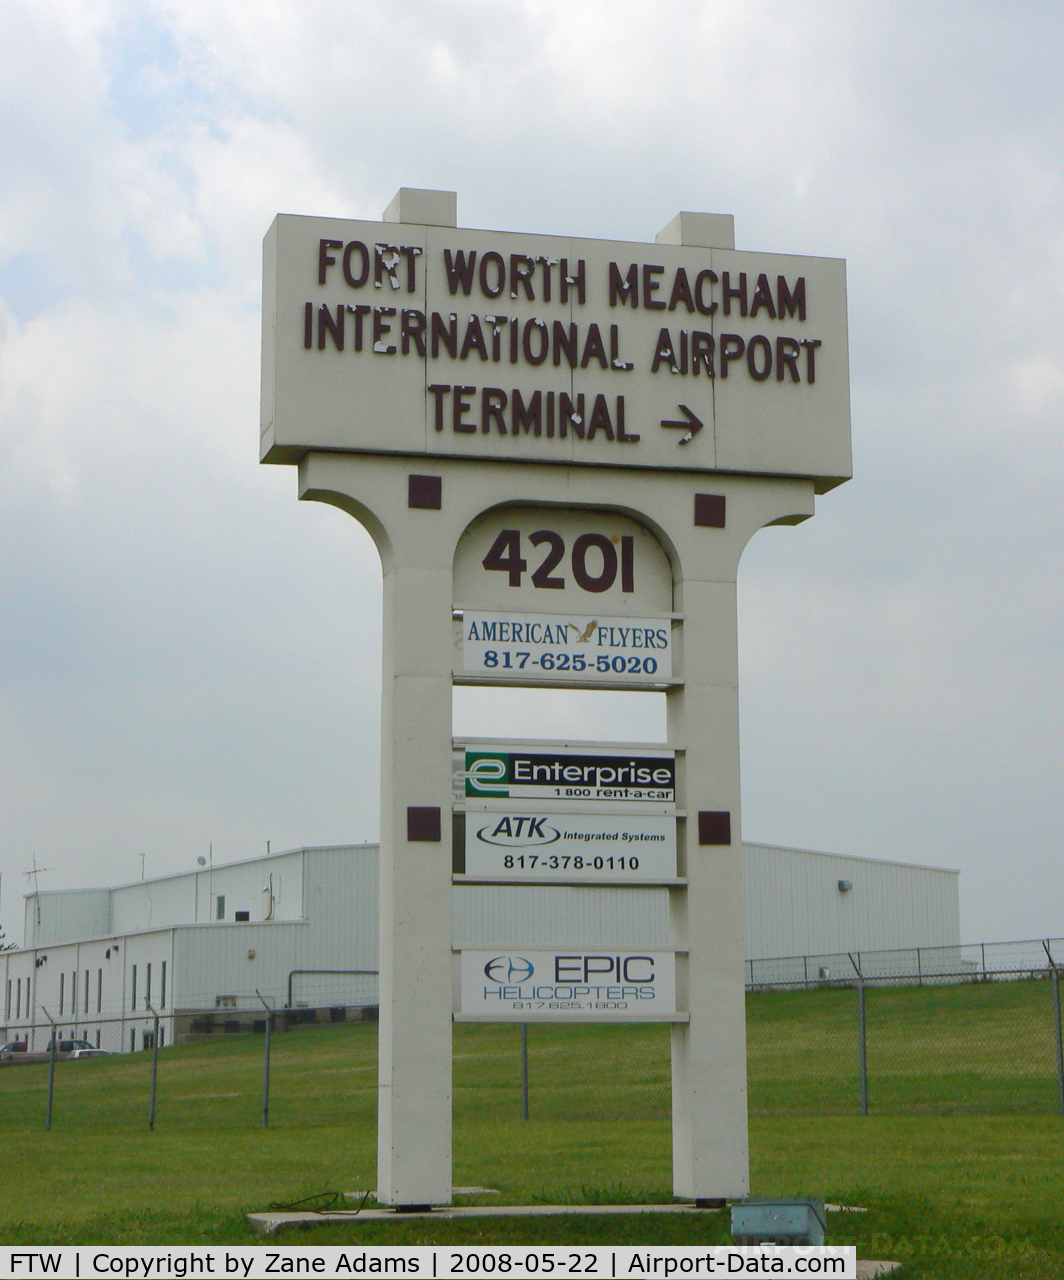 Fort Worth Meacham International Airport (FTW) - Mecham Field sign